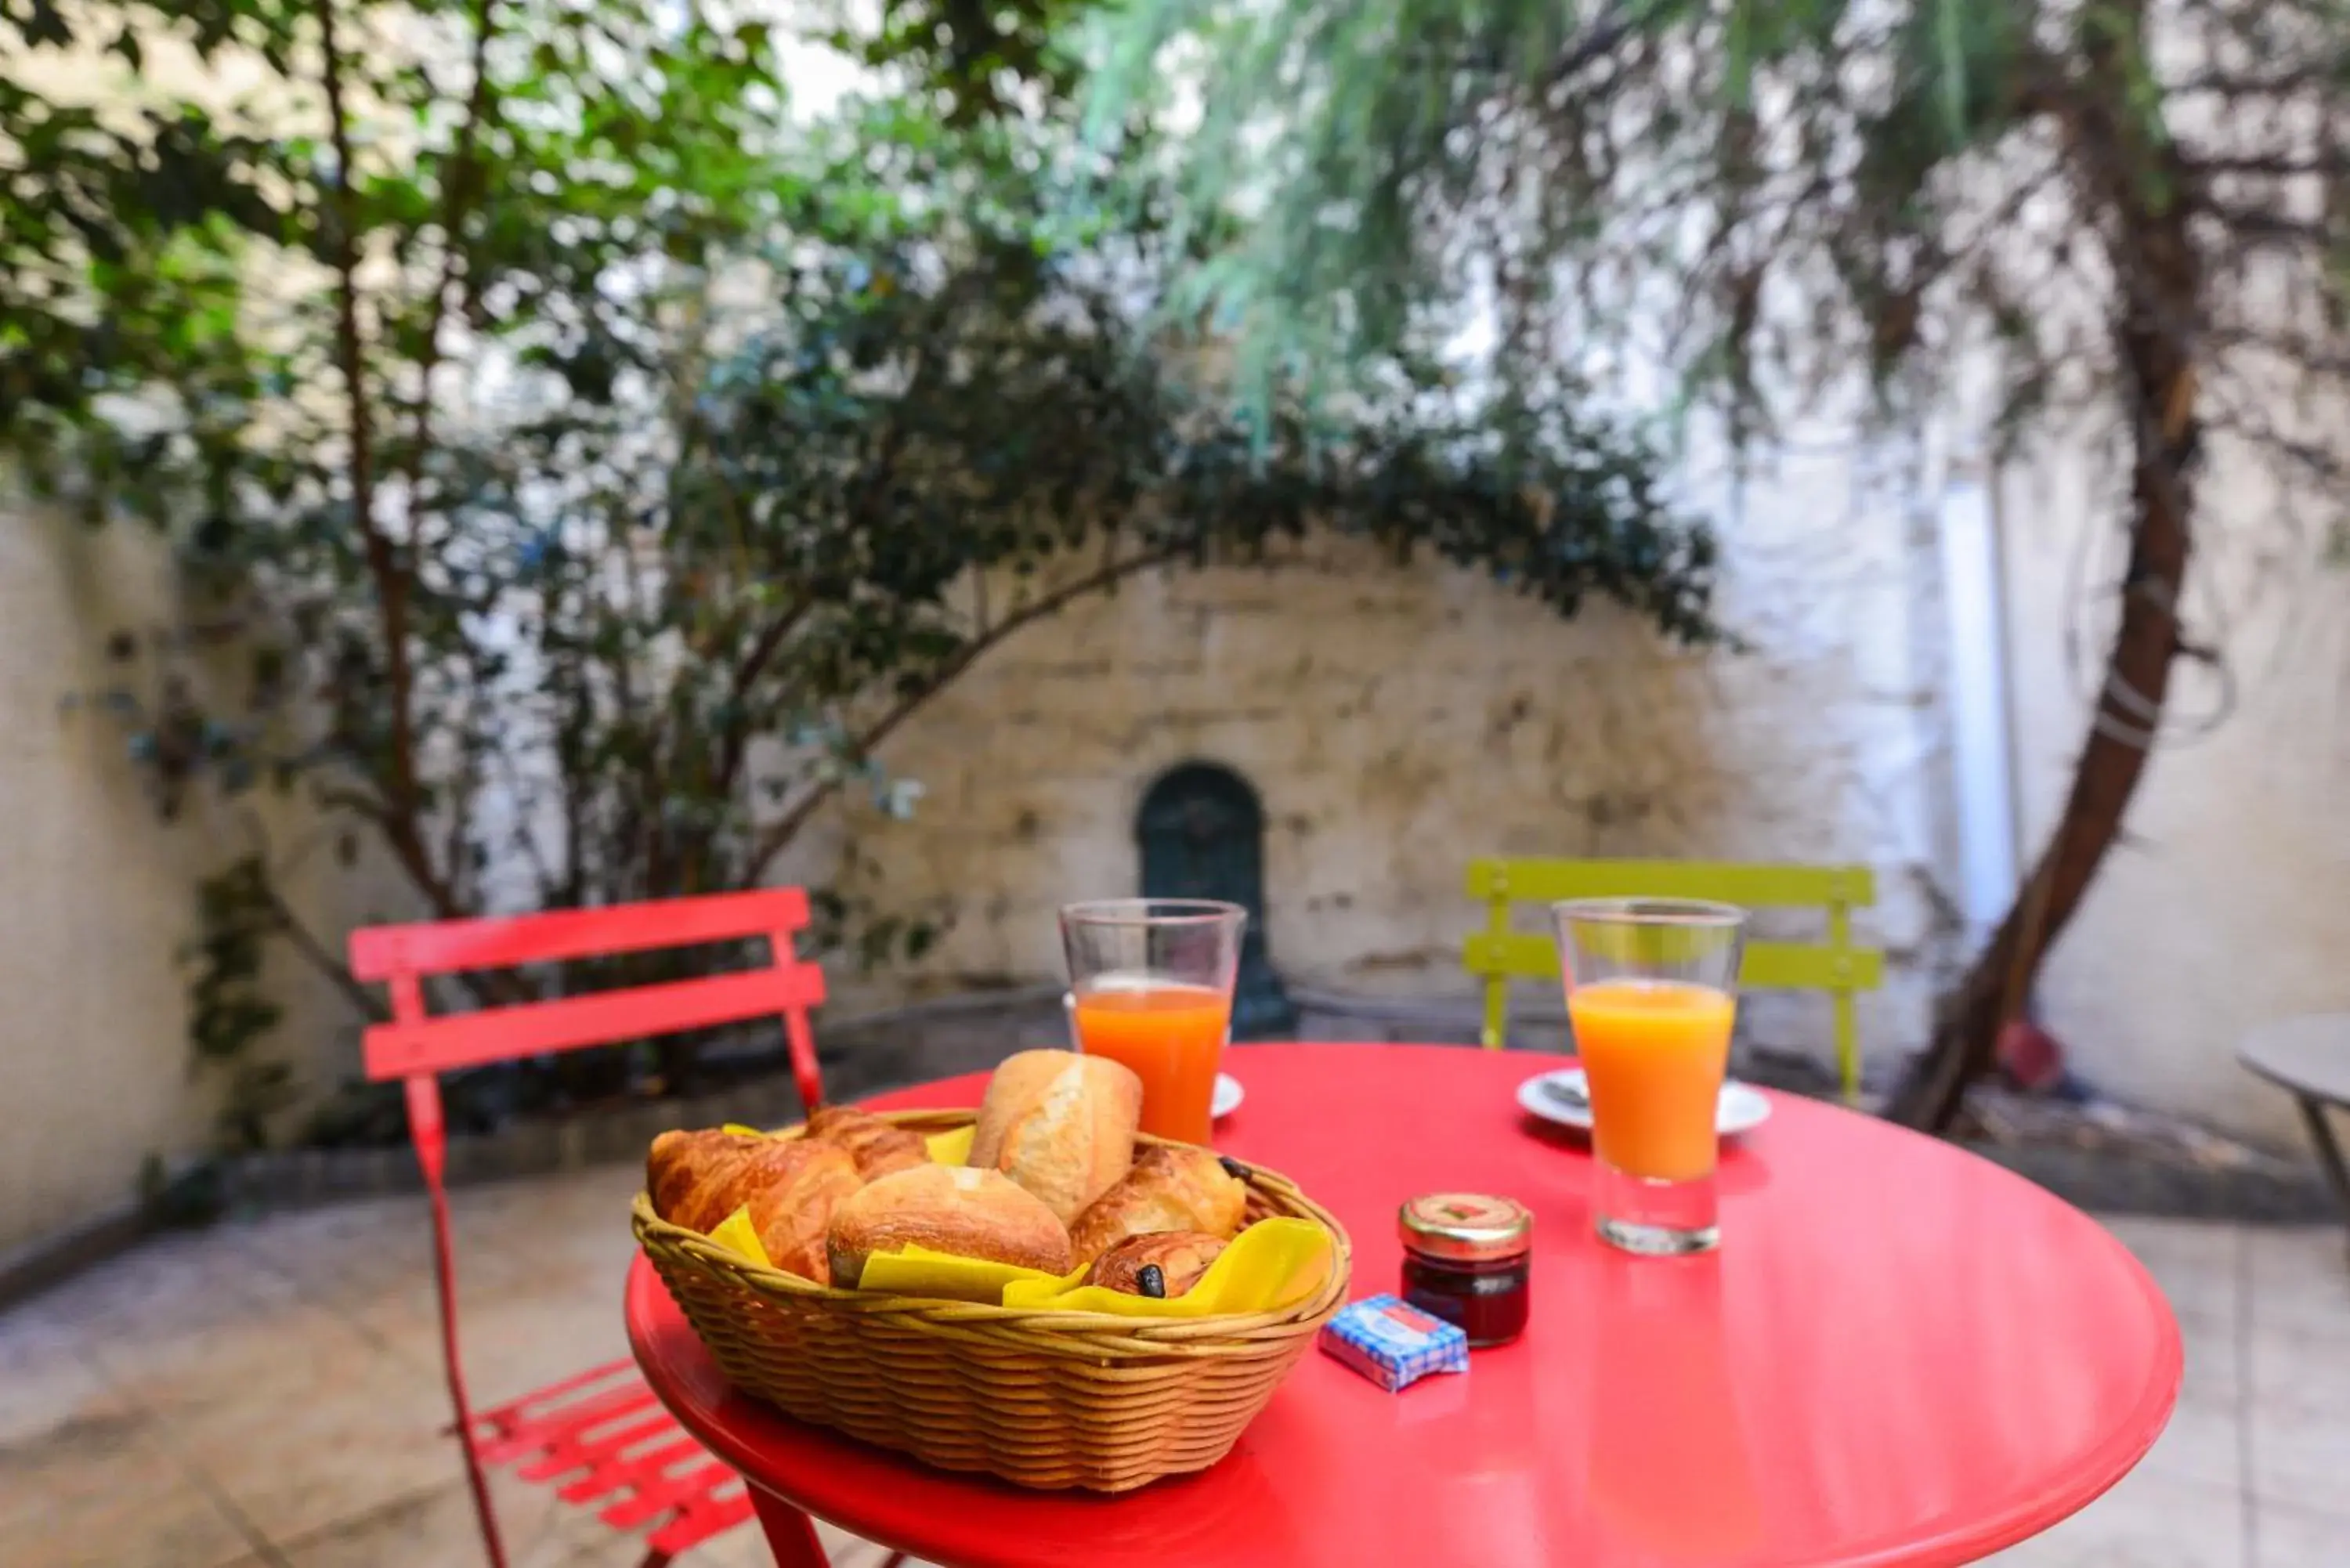 Food and drinks, Breakfast in Pavillon de Montmartre